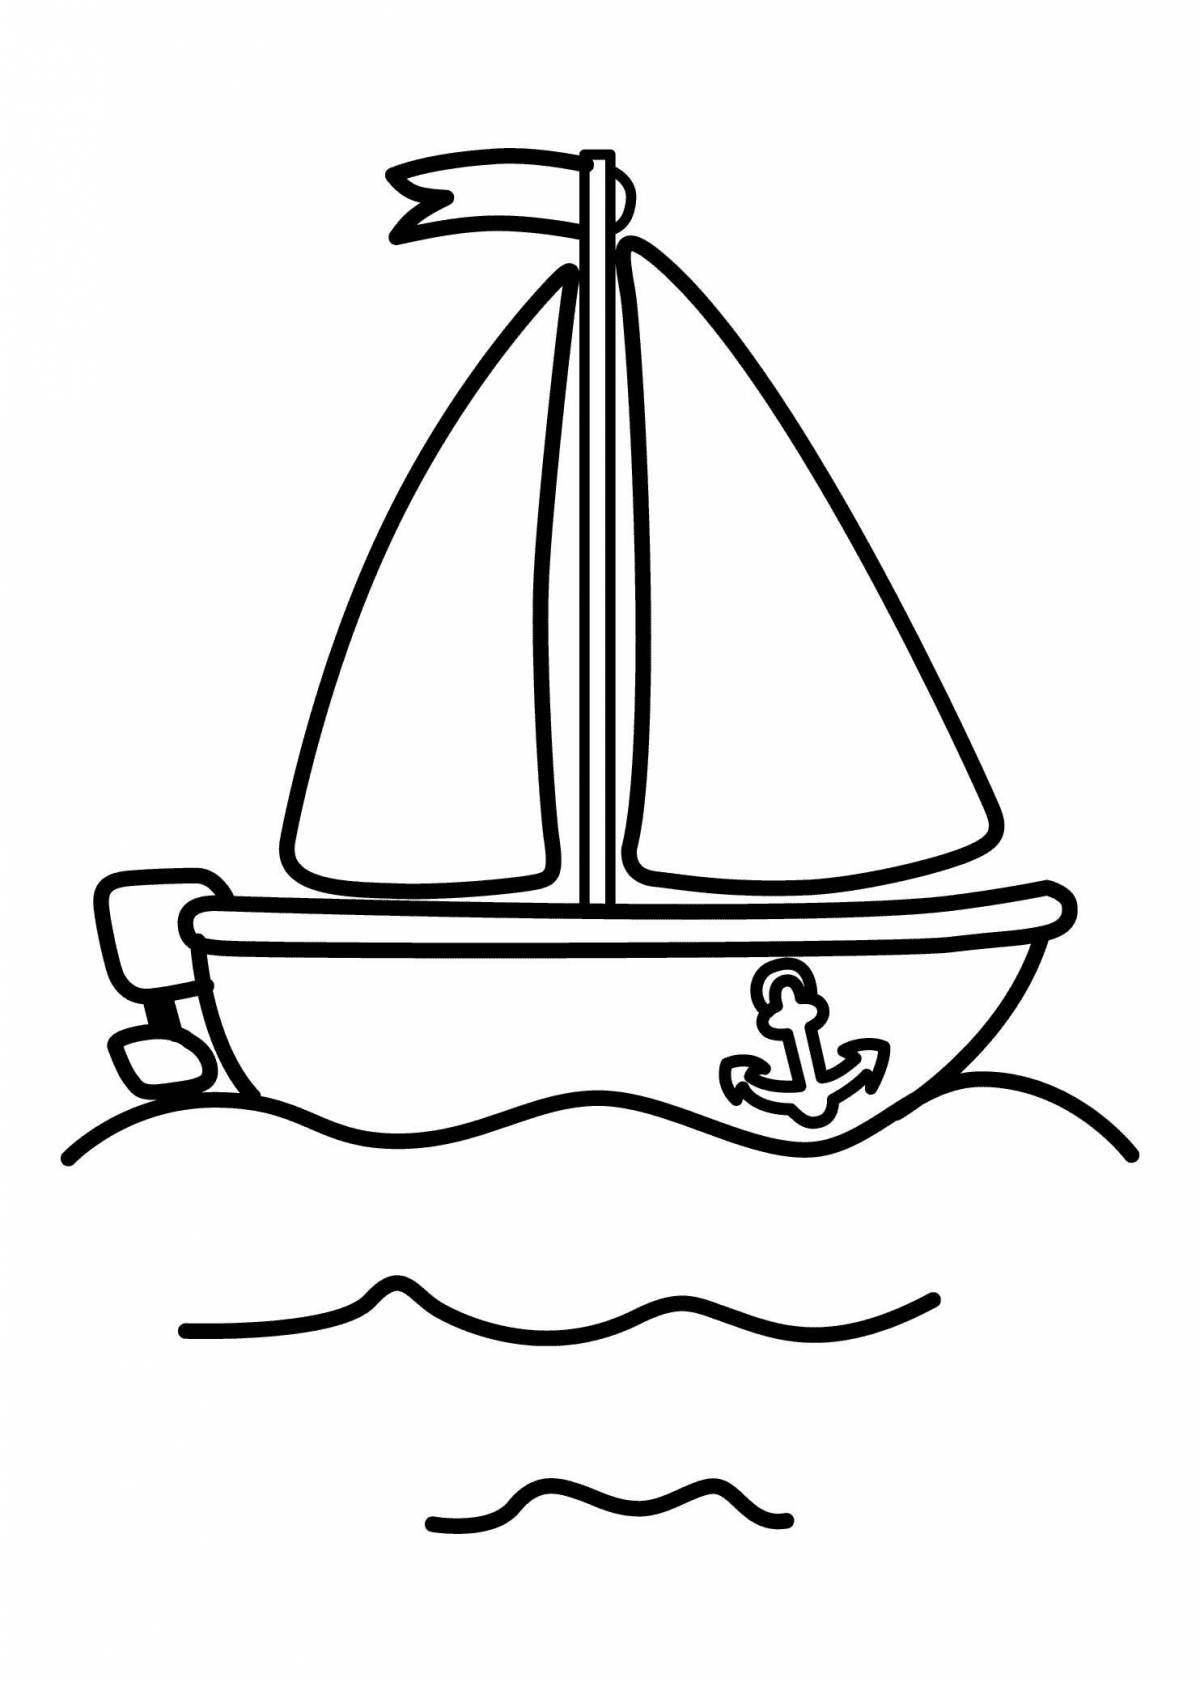 Красочная раскраска лодки для детей 3-4 лет